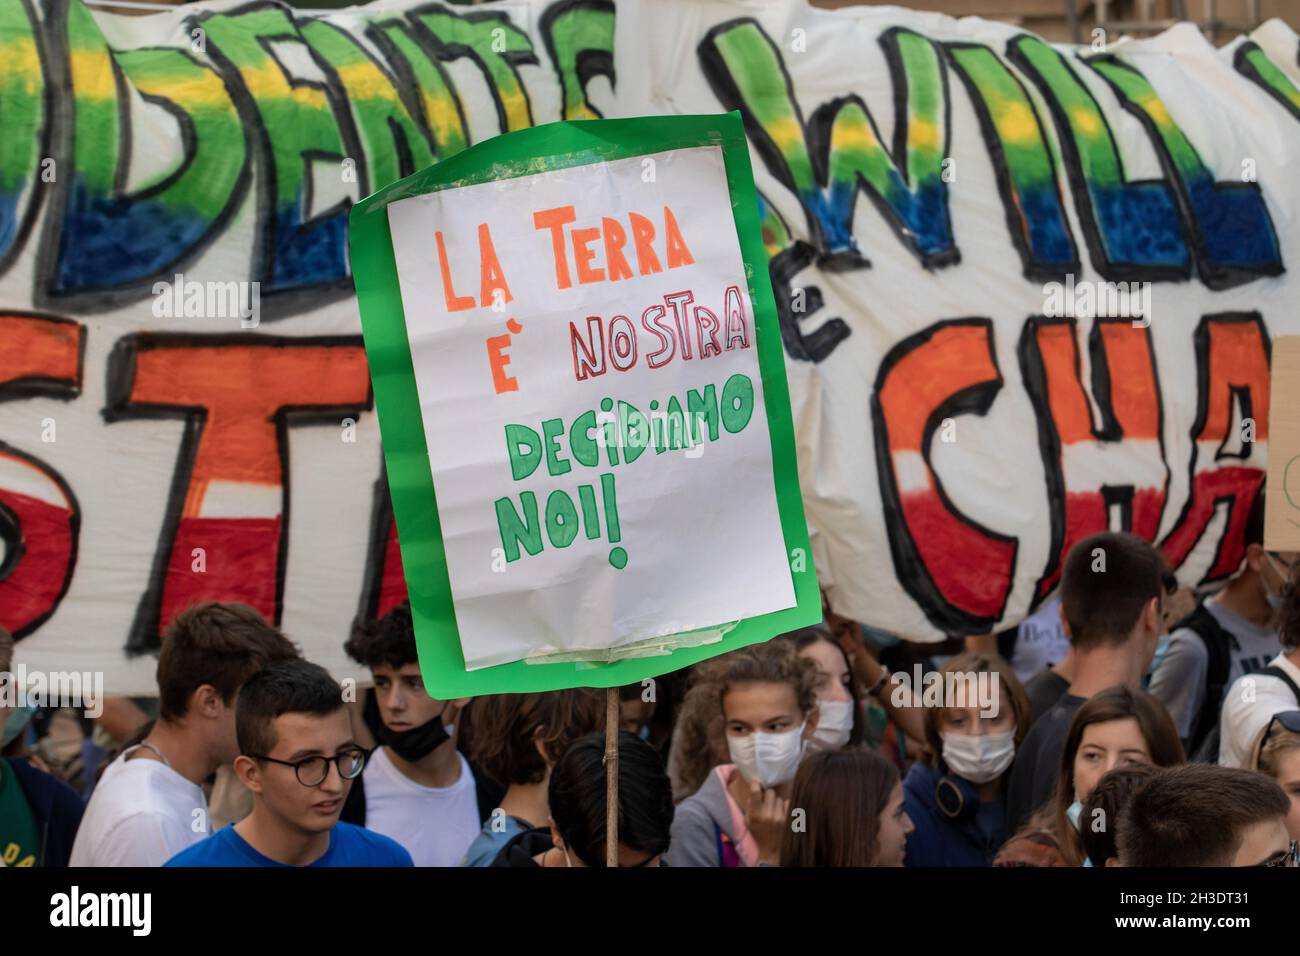 Schild: ' La terra è nostra - Decidiamo noi! ' - ' Die Erde gehört uns - Wir entscheiden! ' Bis zu 50.000 Menschen versammelten sich am 1. Oktober 2021 bei einem Fridays for Future Schulstreik in Mailand, Italien, um anlässlich des Yoth COP 26 und Pre COP ein deutliches Zeichen für Klimaschutz & Umweltschutz, die Einhaltung des Pariser Abkommens und das 1, 5 Grad Ziel und um Druck auf die Politik auszuüben. * Sign: ' The world is our's - we decide! ' On October 1st, 2021 on the occasion of the Youth COP and Pre COP 26 up to 50,000 people joined a Fridays for Future school strike in Milan, Stock Photo